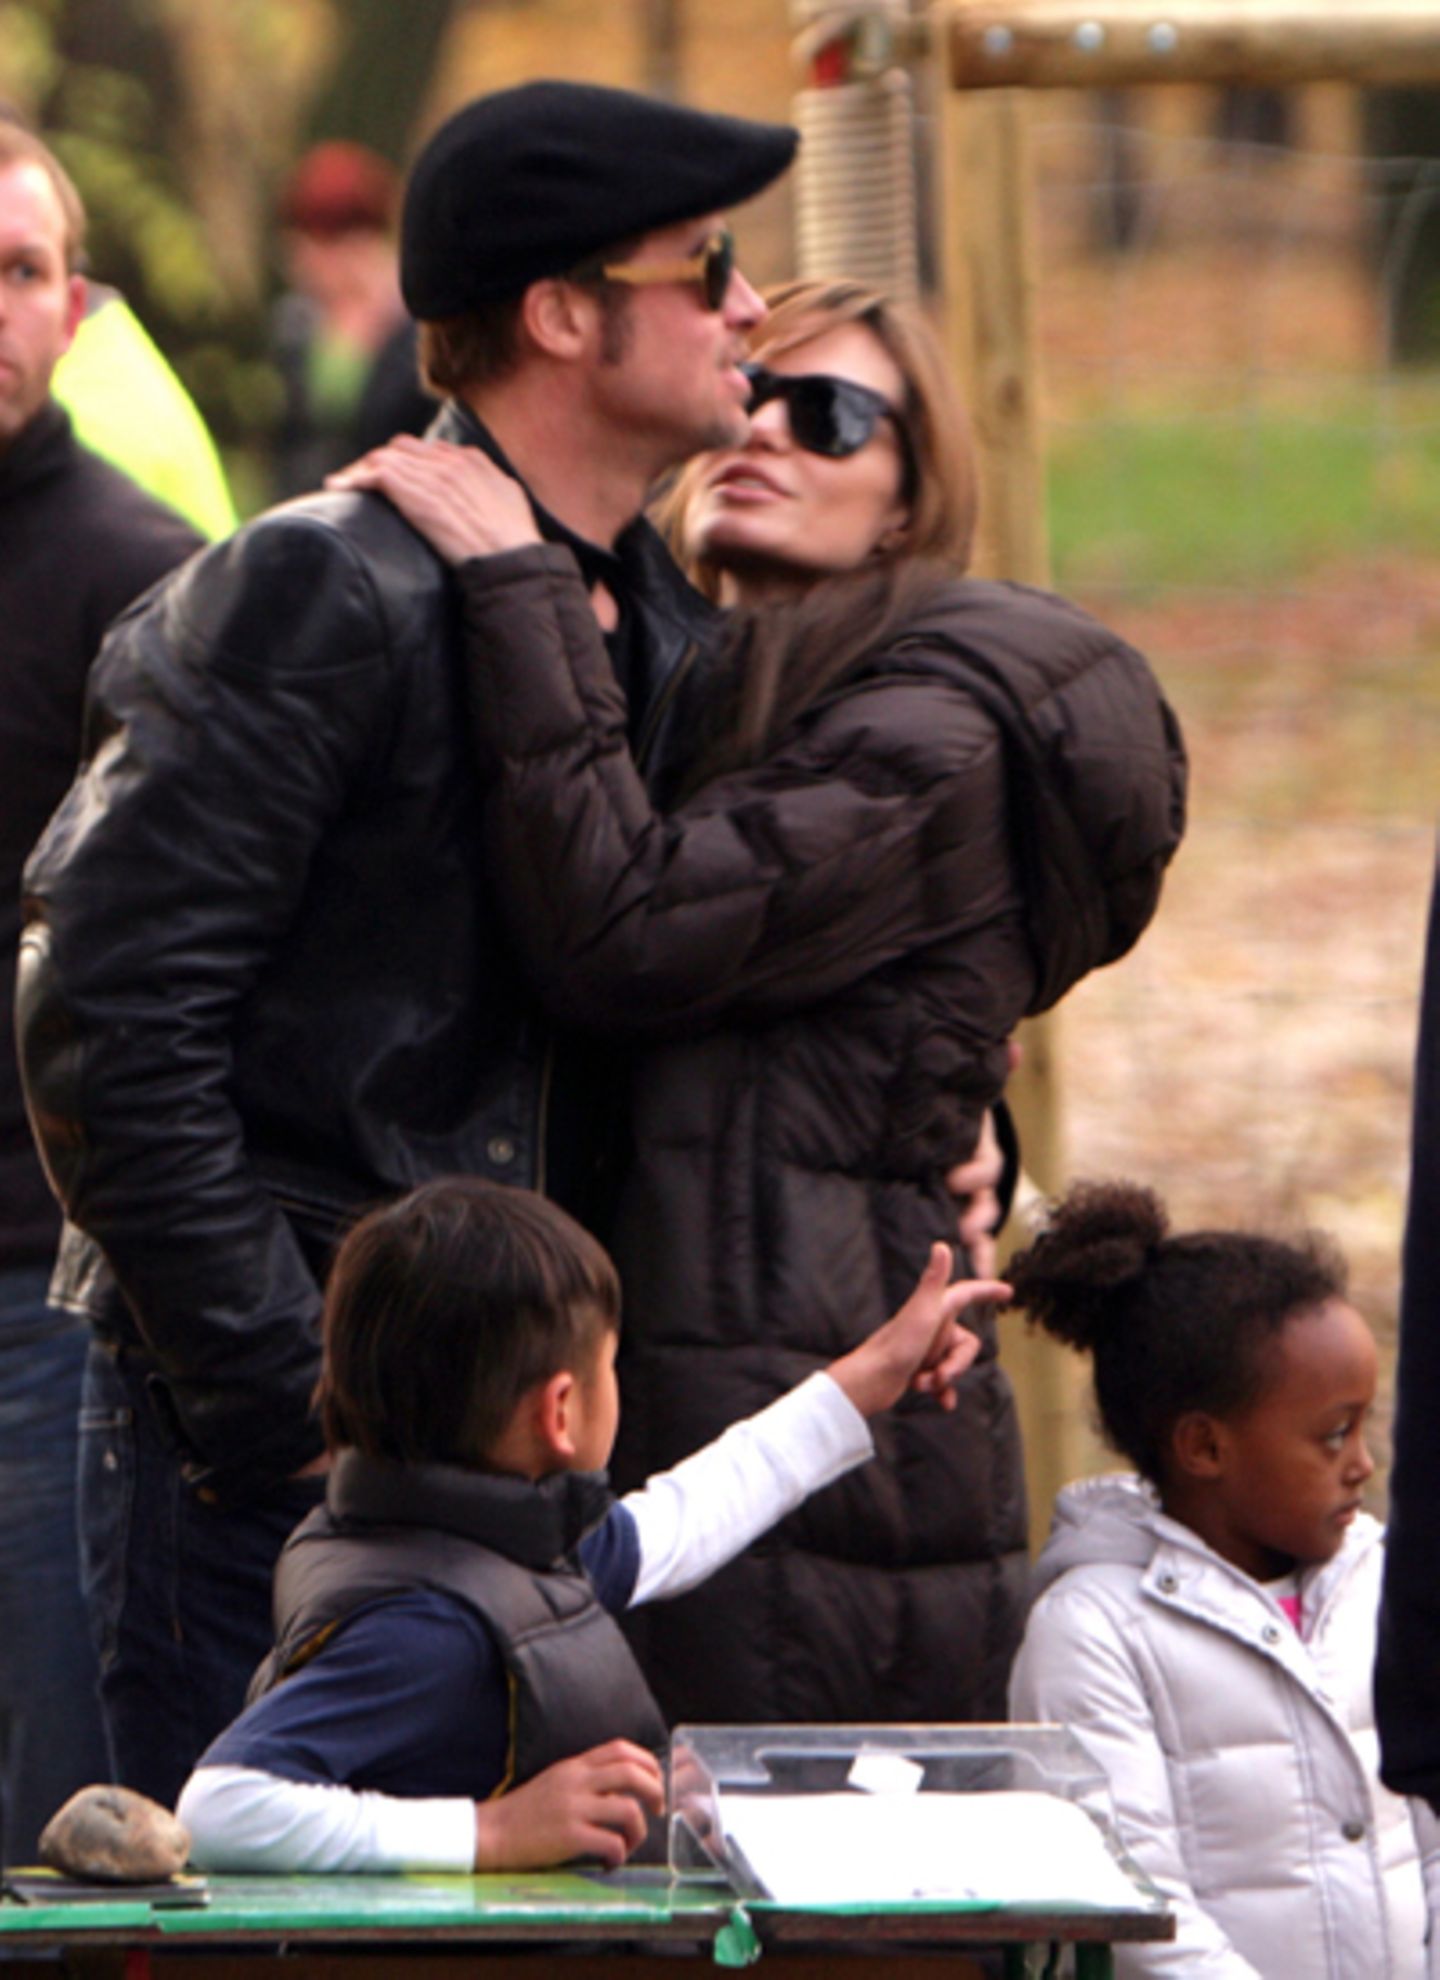 Während die Kinder beschäftigt und abgelenkt sind, nutzen Brad Pitt und Angelina Jolie eine freie Minute zum Kuscheln.